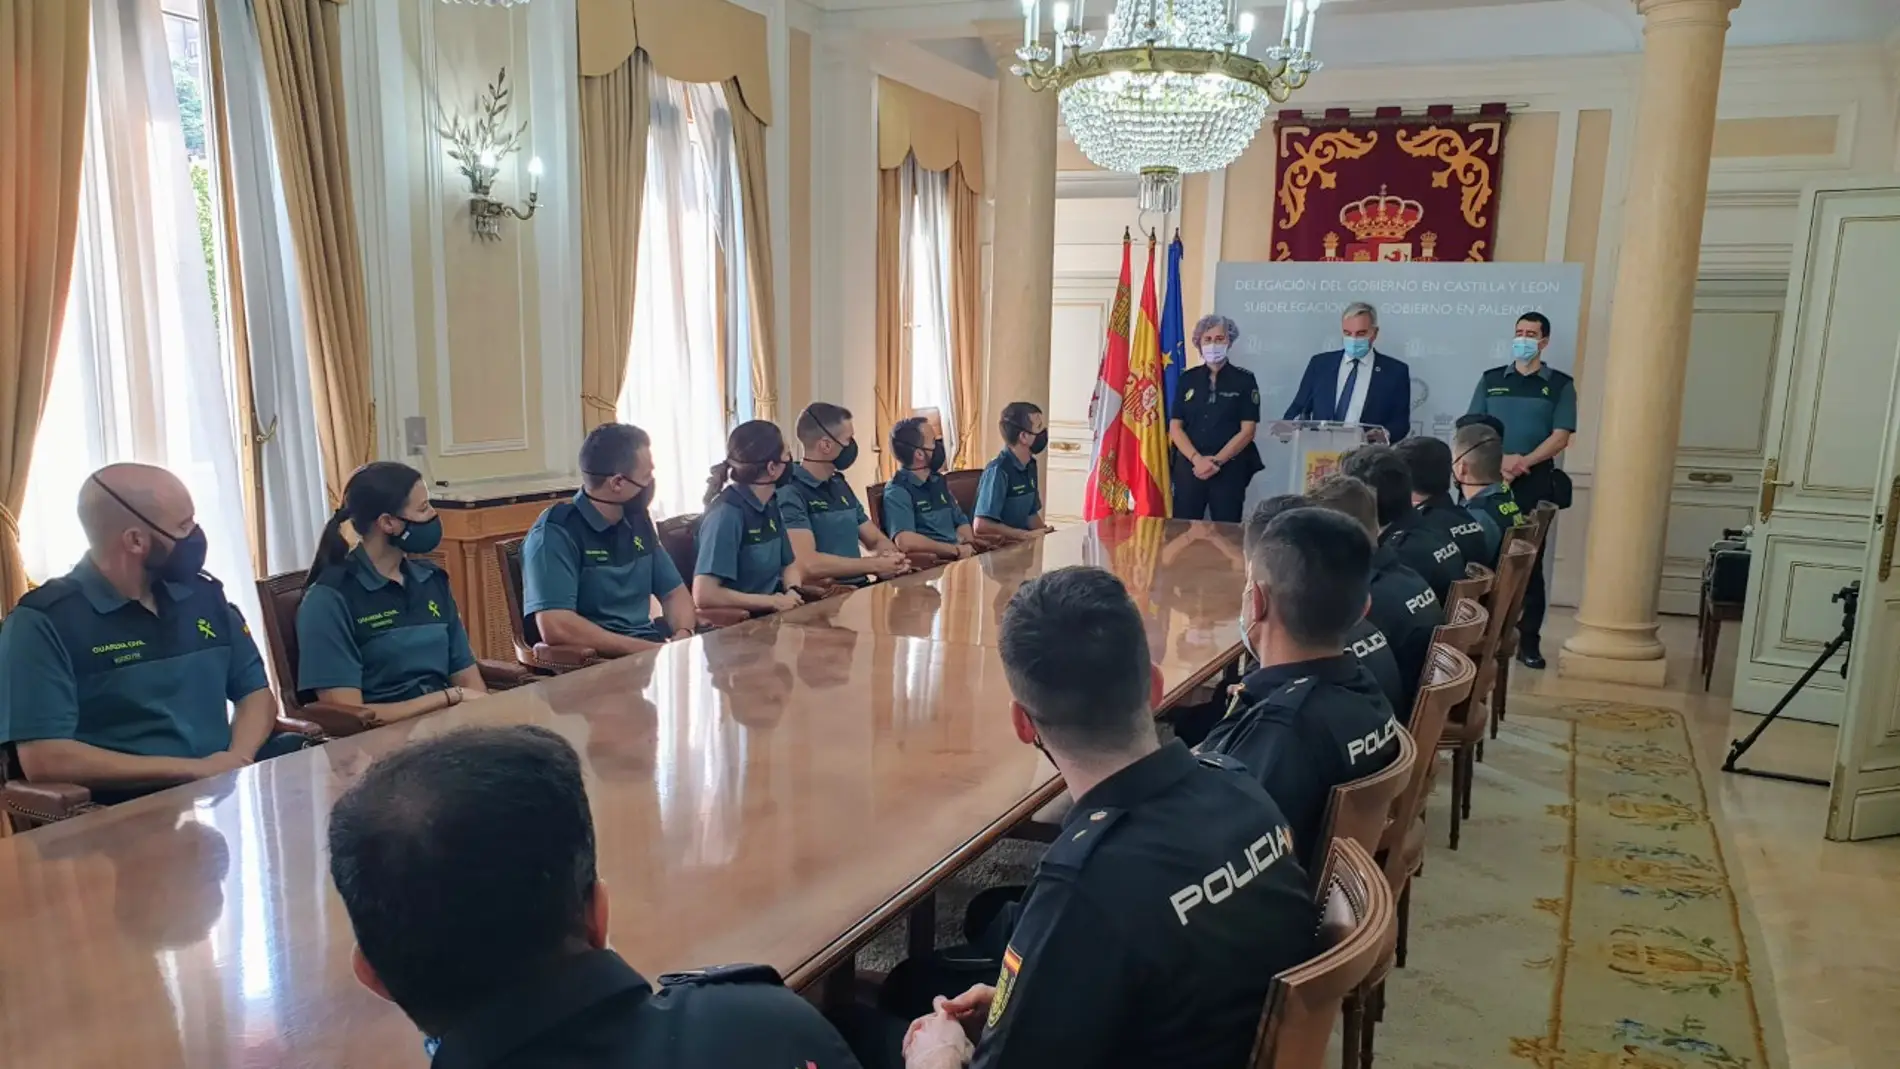 20 integrantes de las Fuerzas y Cuerpos de la Seguridad del Estado en prácticas se incorporan a la provincia de Palencia